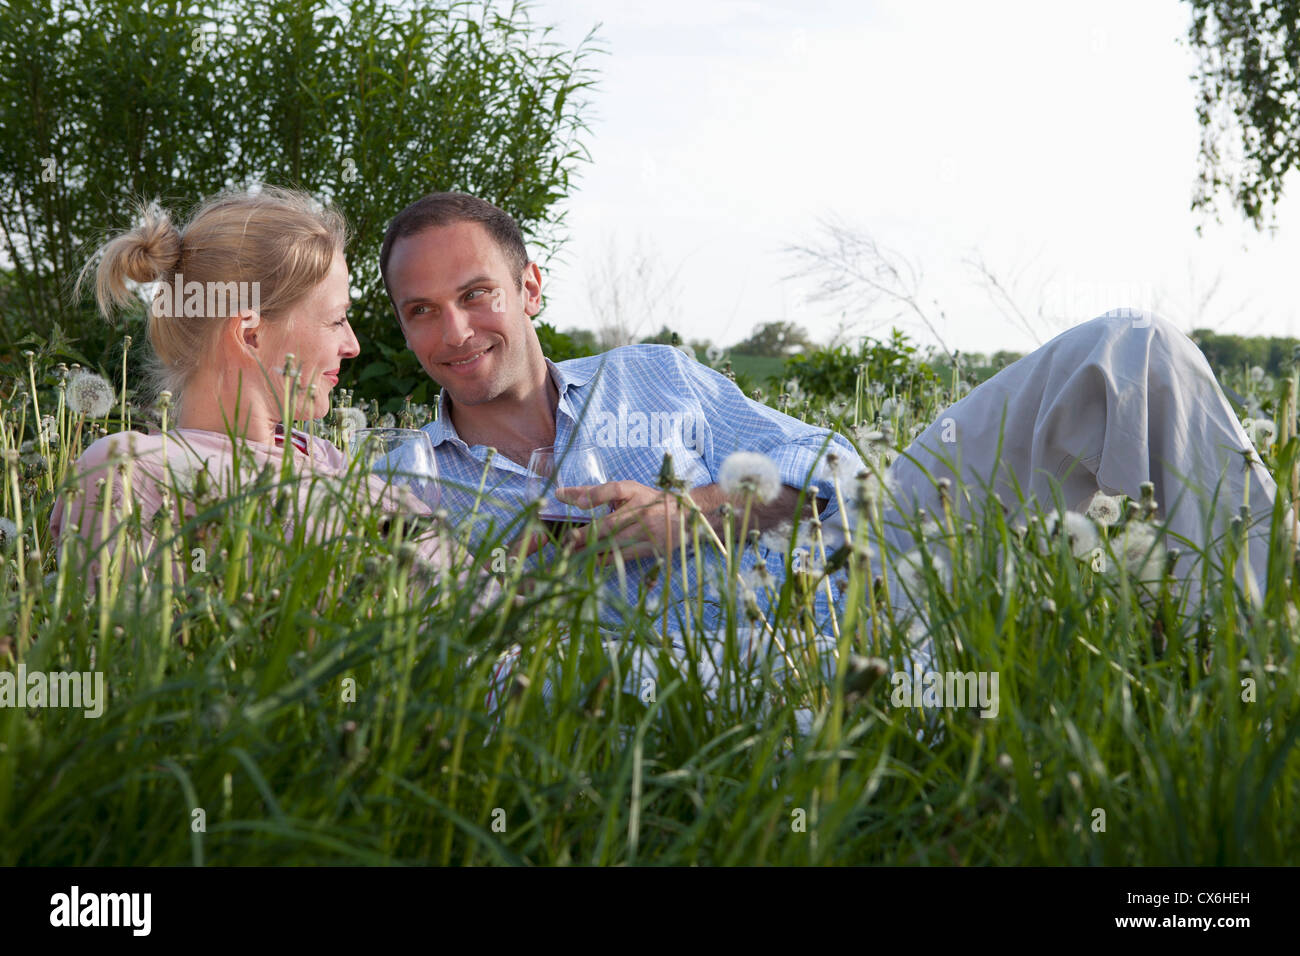 Un couple allongé dans l'herbe d'un vin rouge Banque D'Images